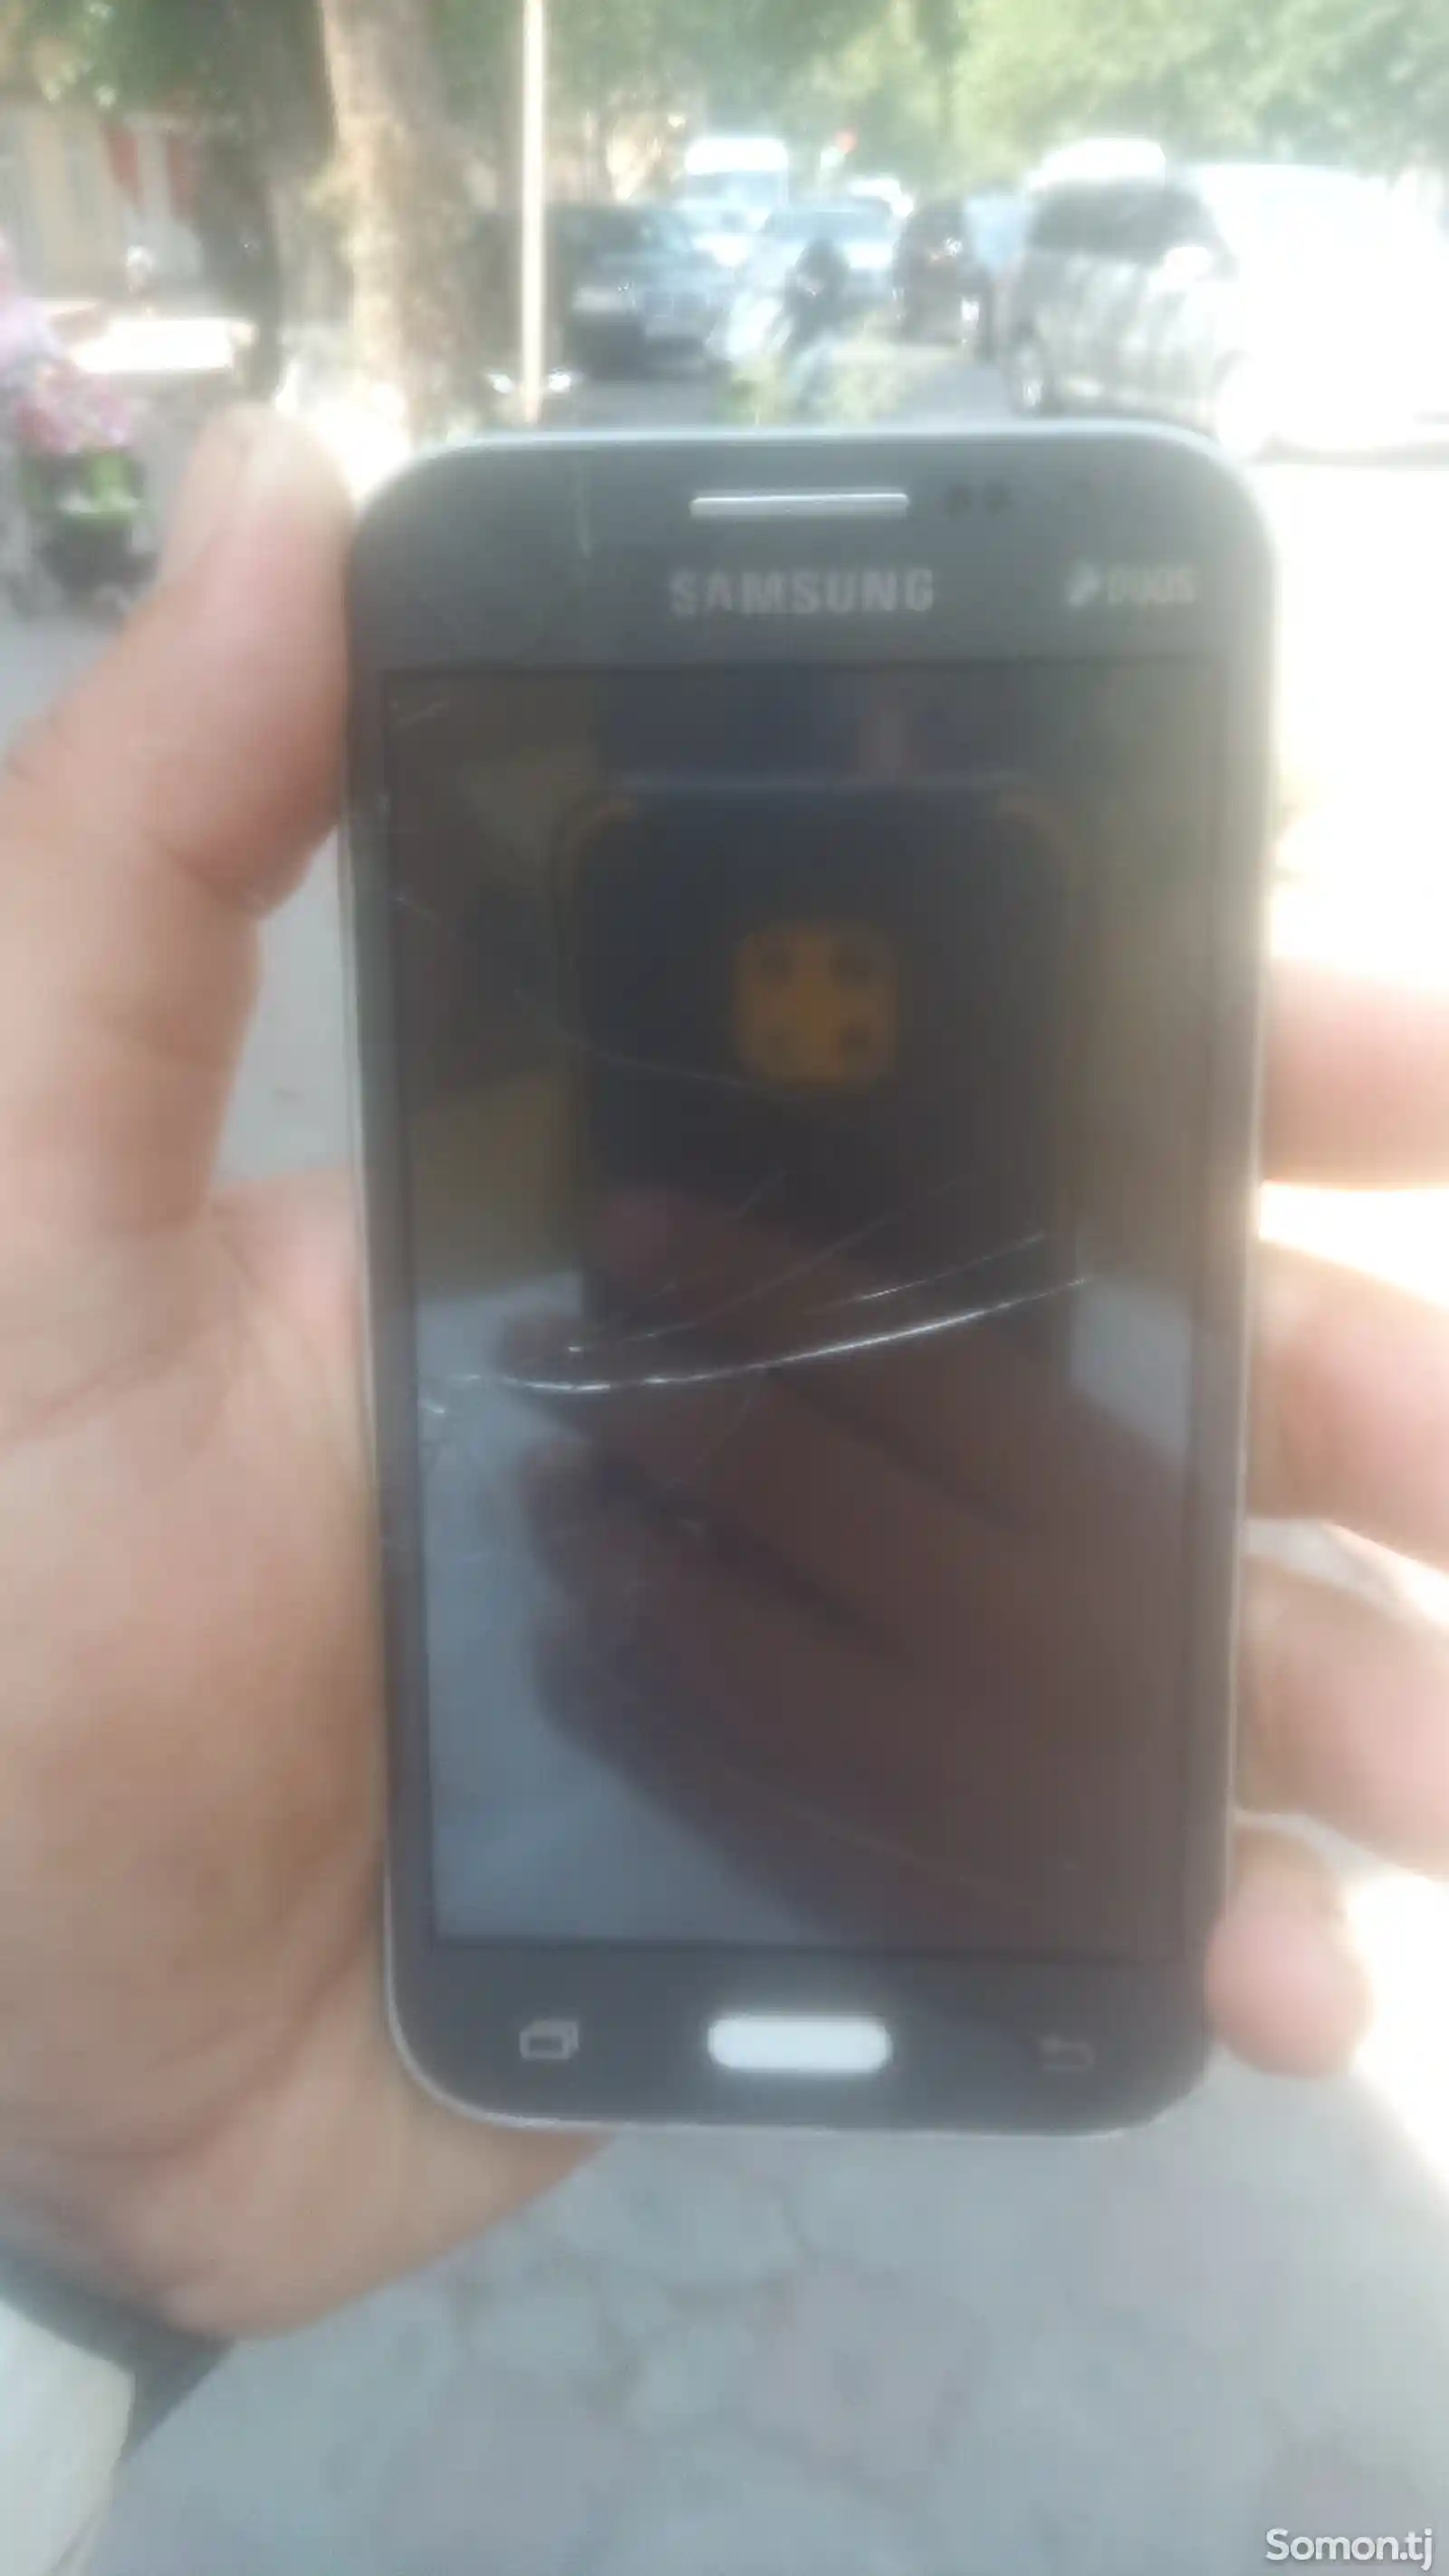 Samsung Galaxy J2-3